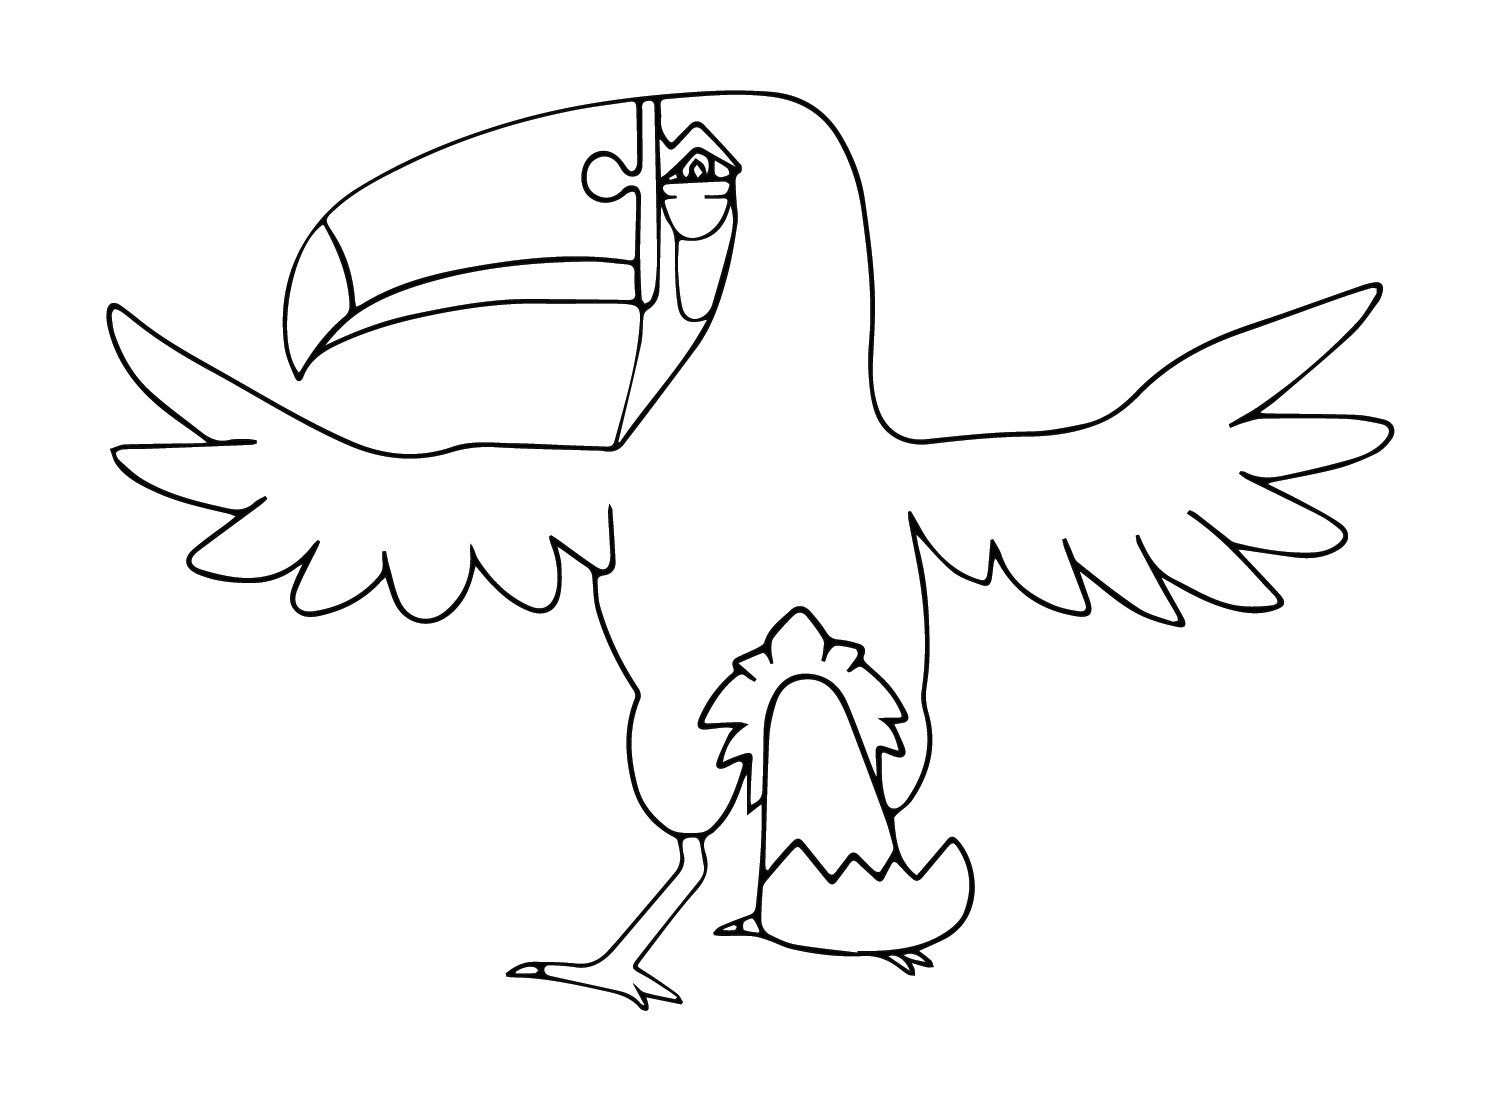 Tukannon-Zeichnung von Toucannon